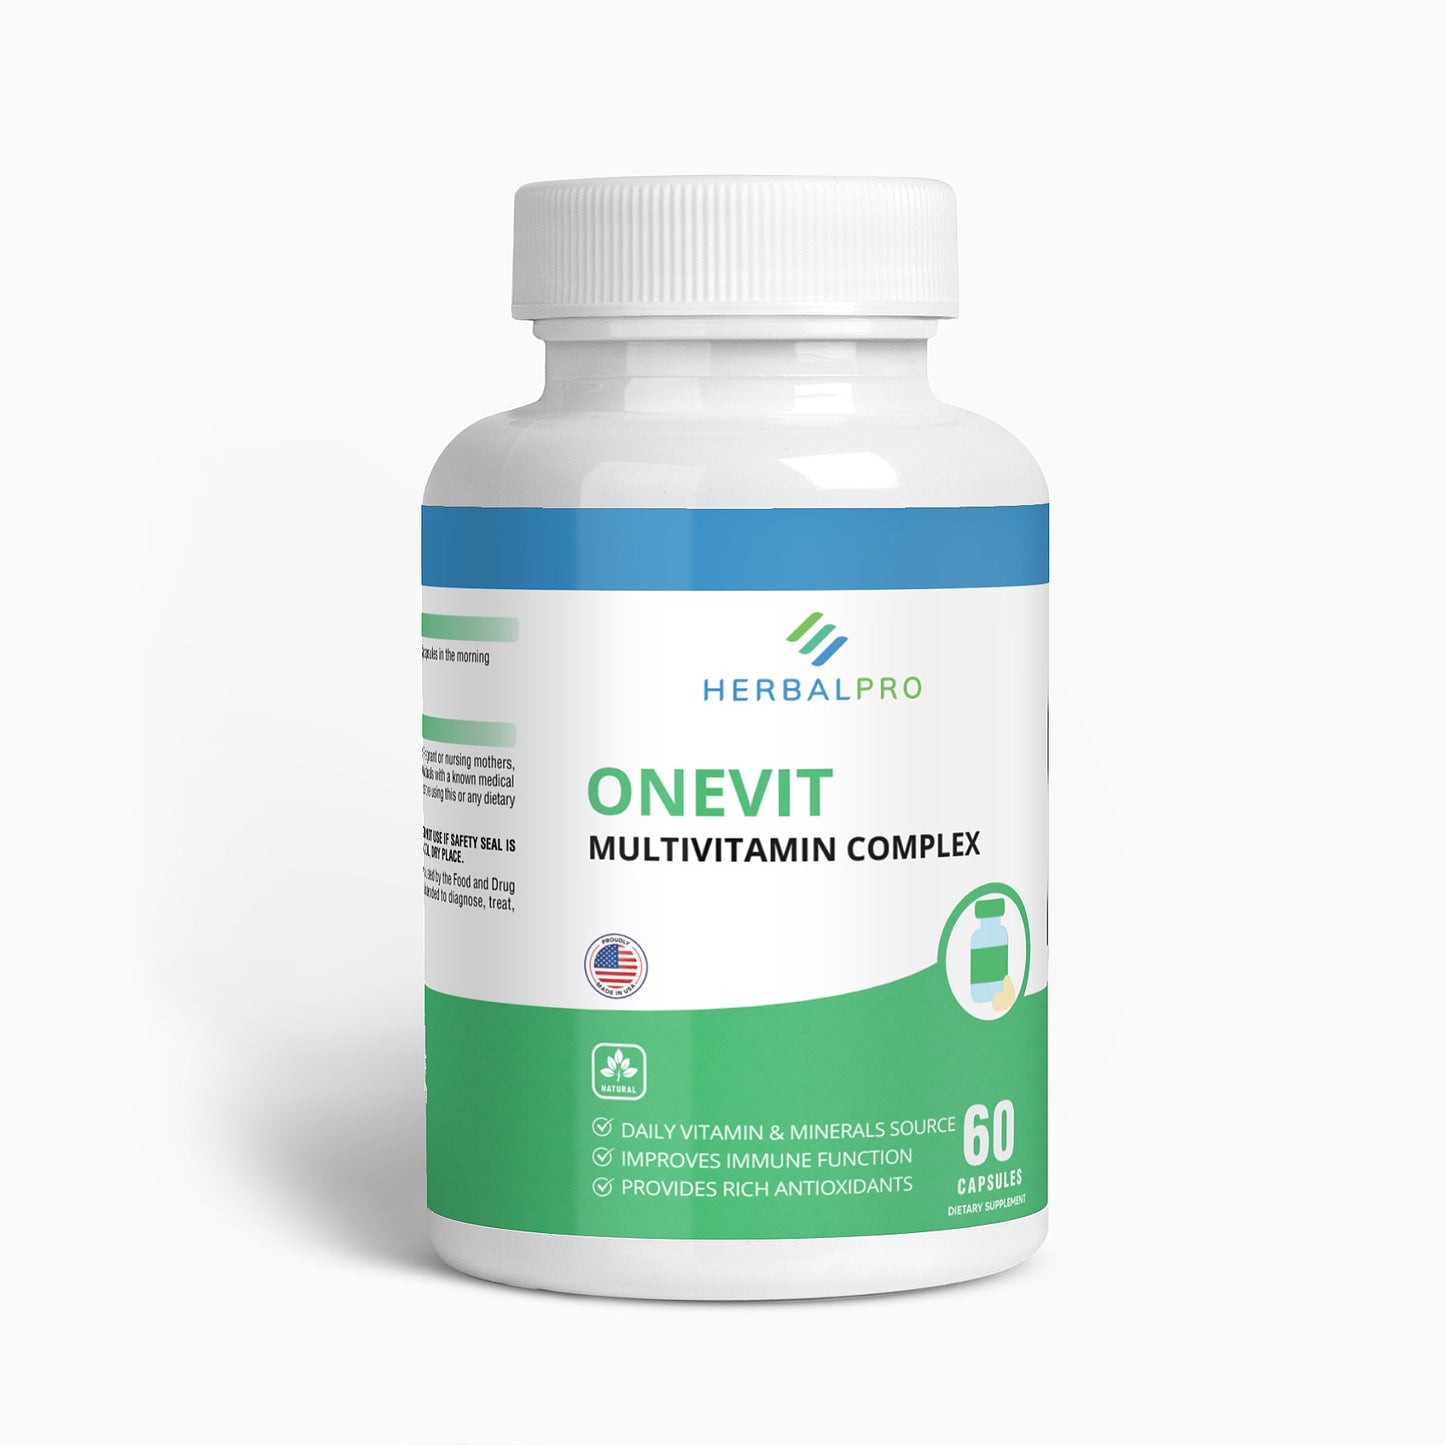 OneVit (Multivitamin Complex)